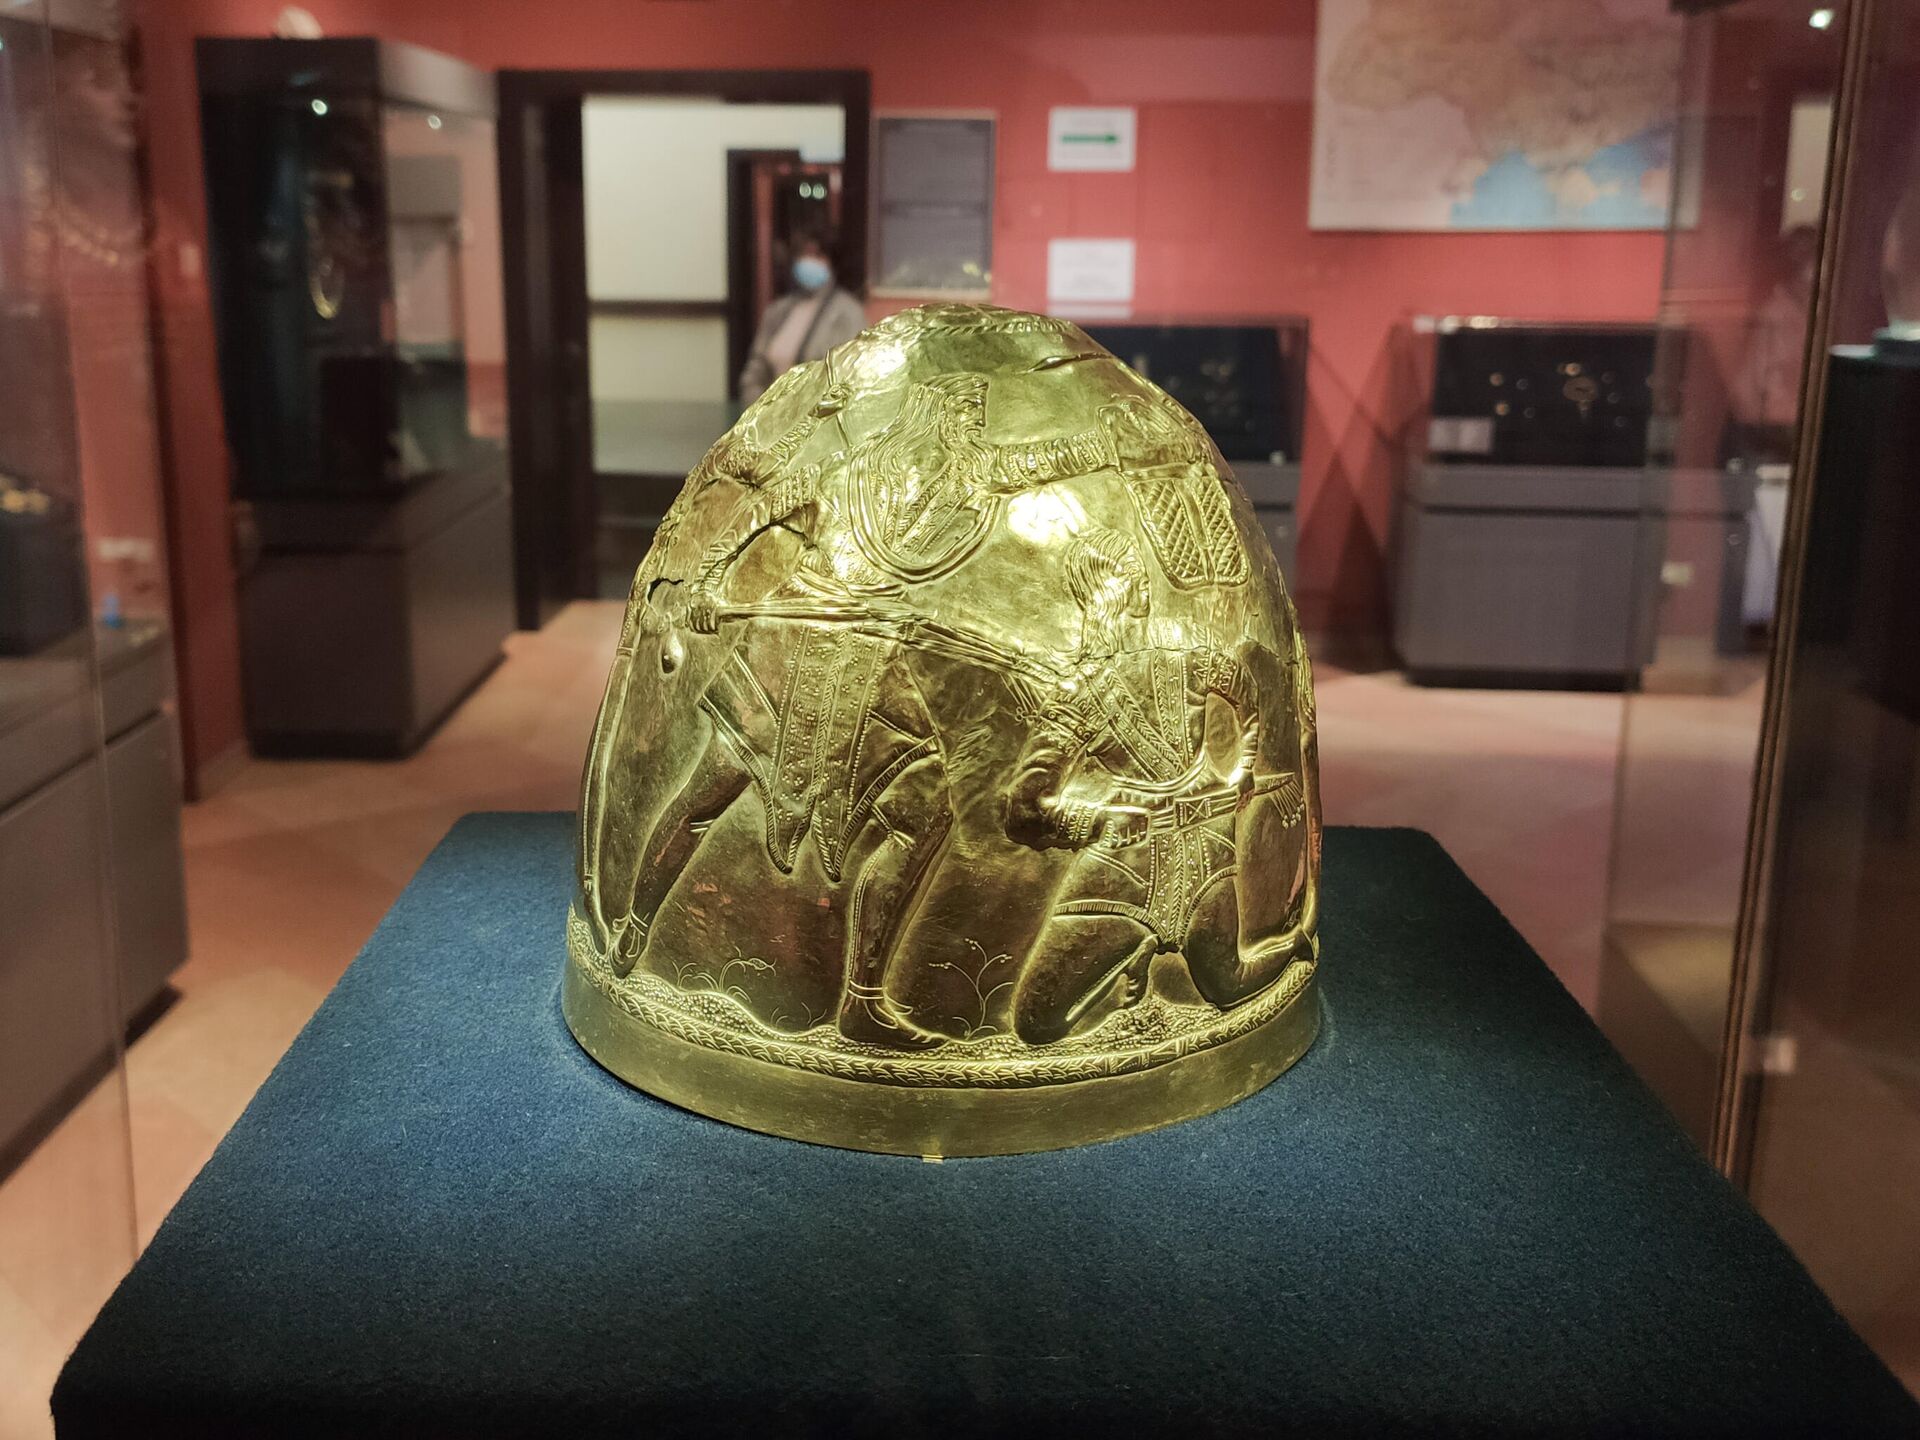 Скифский золотой шлем - экспонат, находившихся на выставке Скифское золото в Амстердаме и возвращенный на Украину - Sputnik Latvija, 1920, 28.10.2021